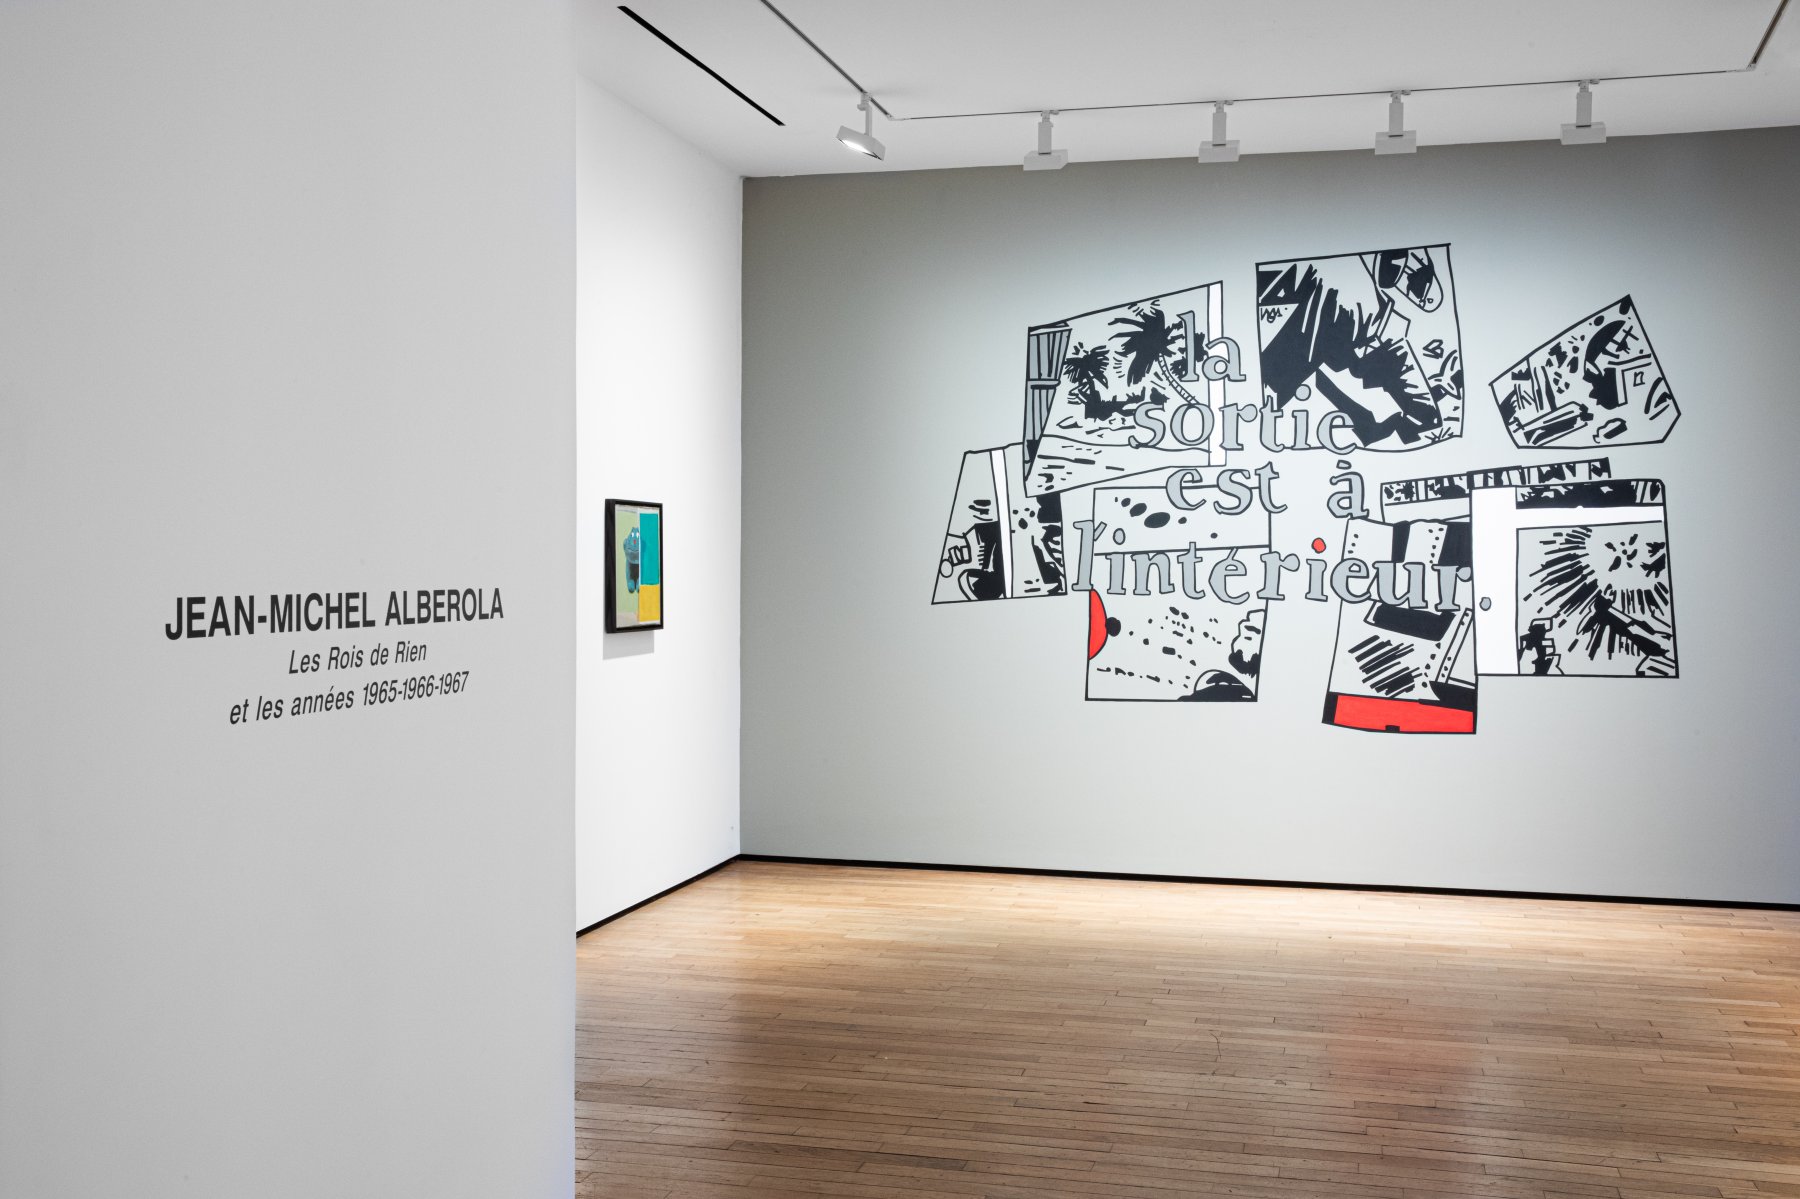 Installation image for Jean-Michel Alberola: Les rois de rien et les années 1965-1966-1967, at Templon